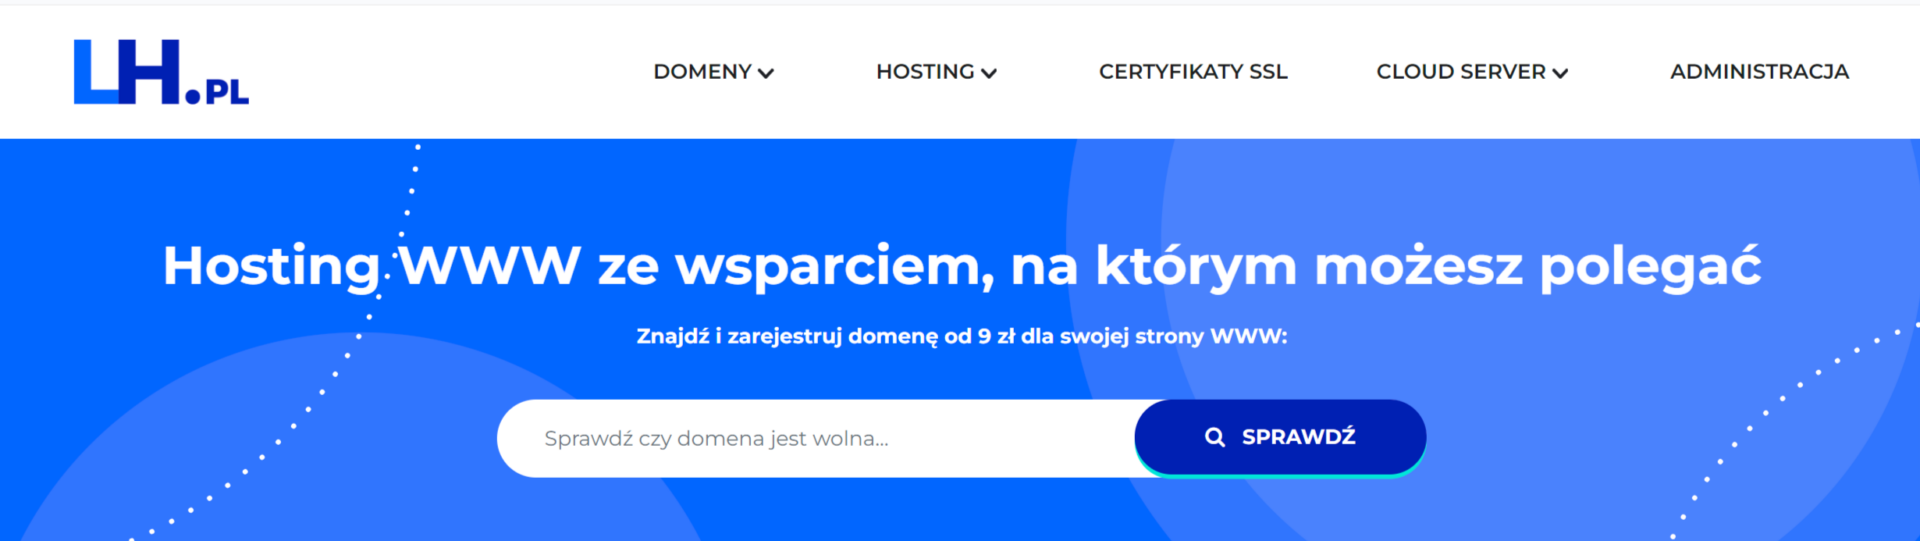 wycinek wyszukiwarki domen ze strony lh.pl